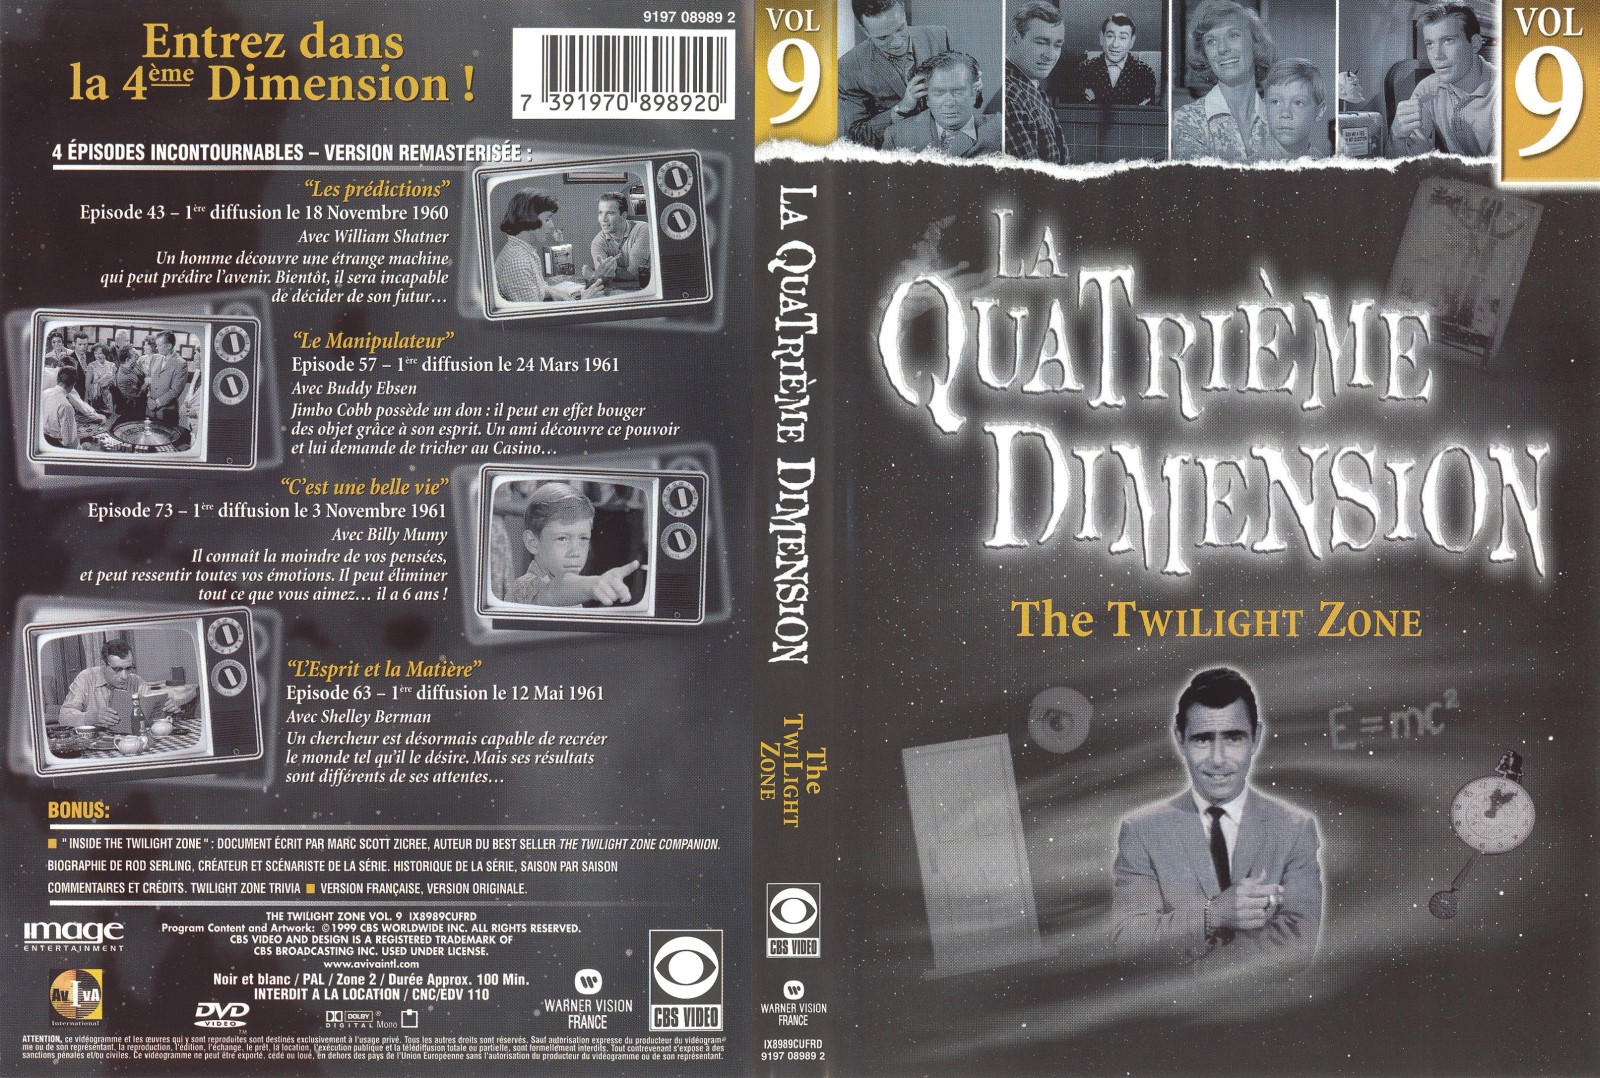 Jaquette DVD La quatrieme dimension vol 9